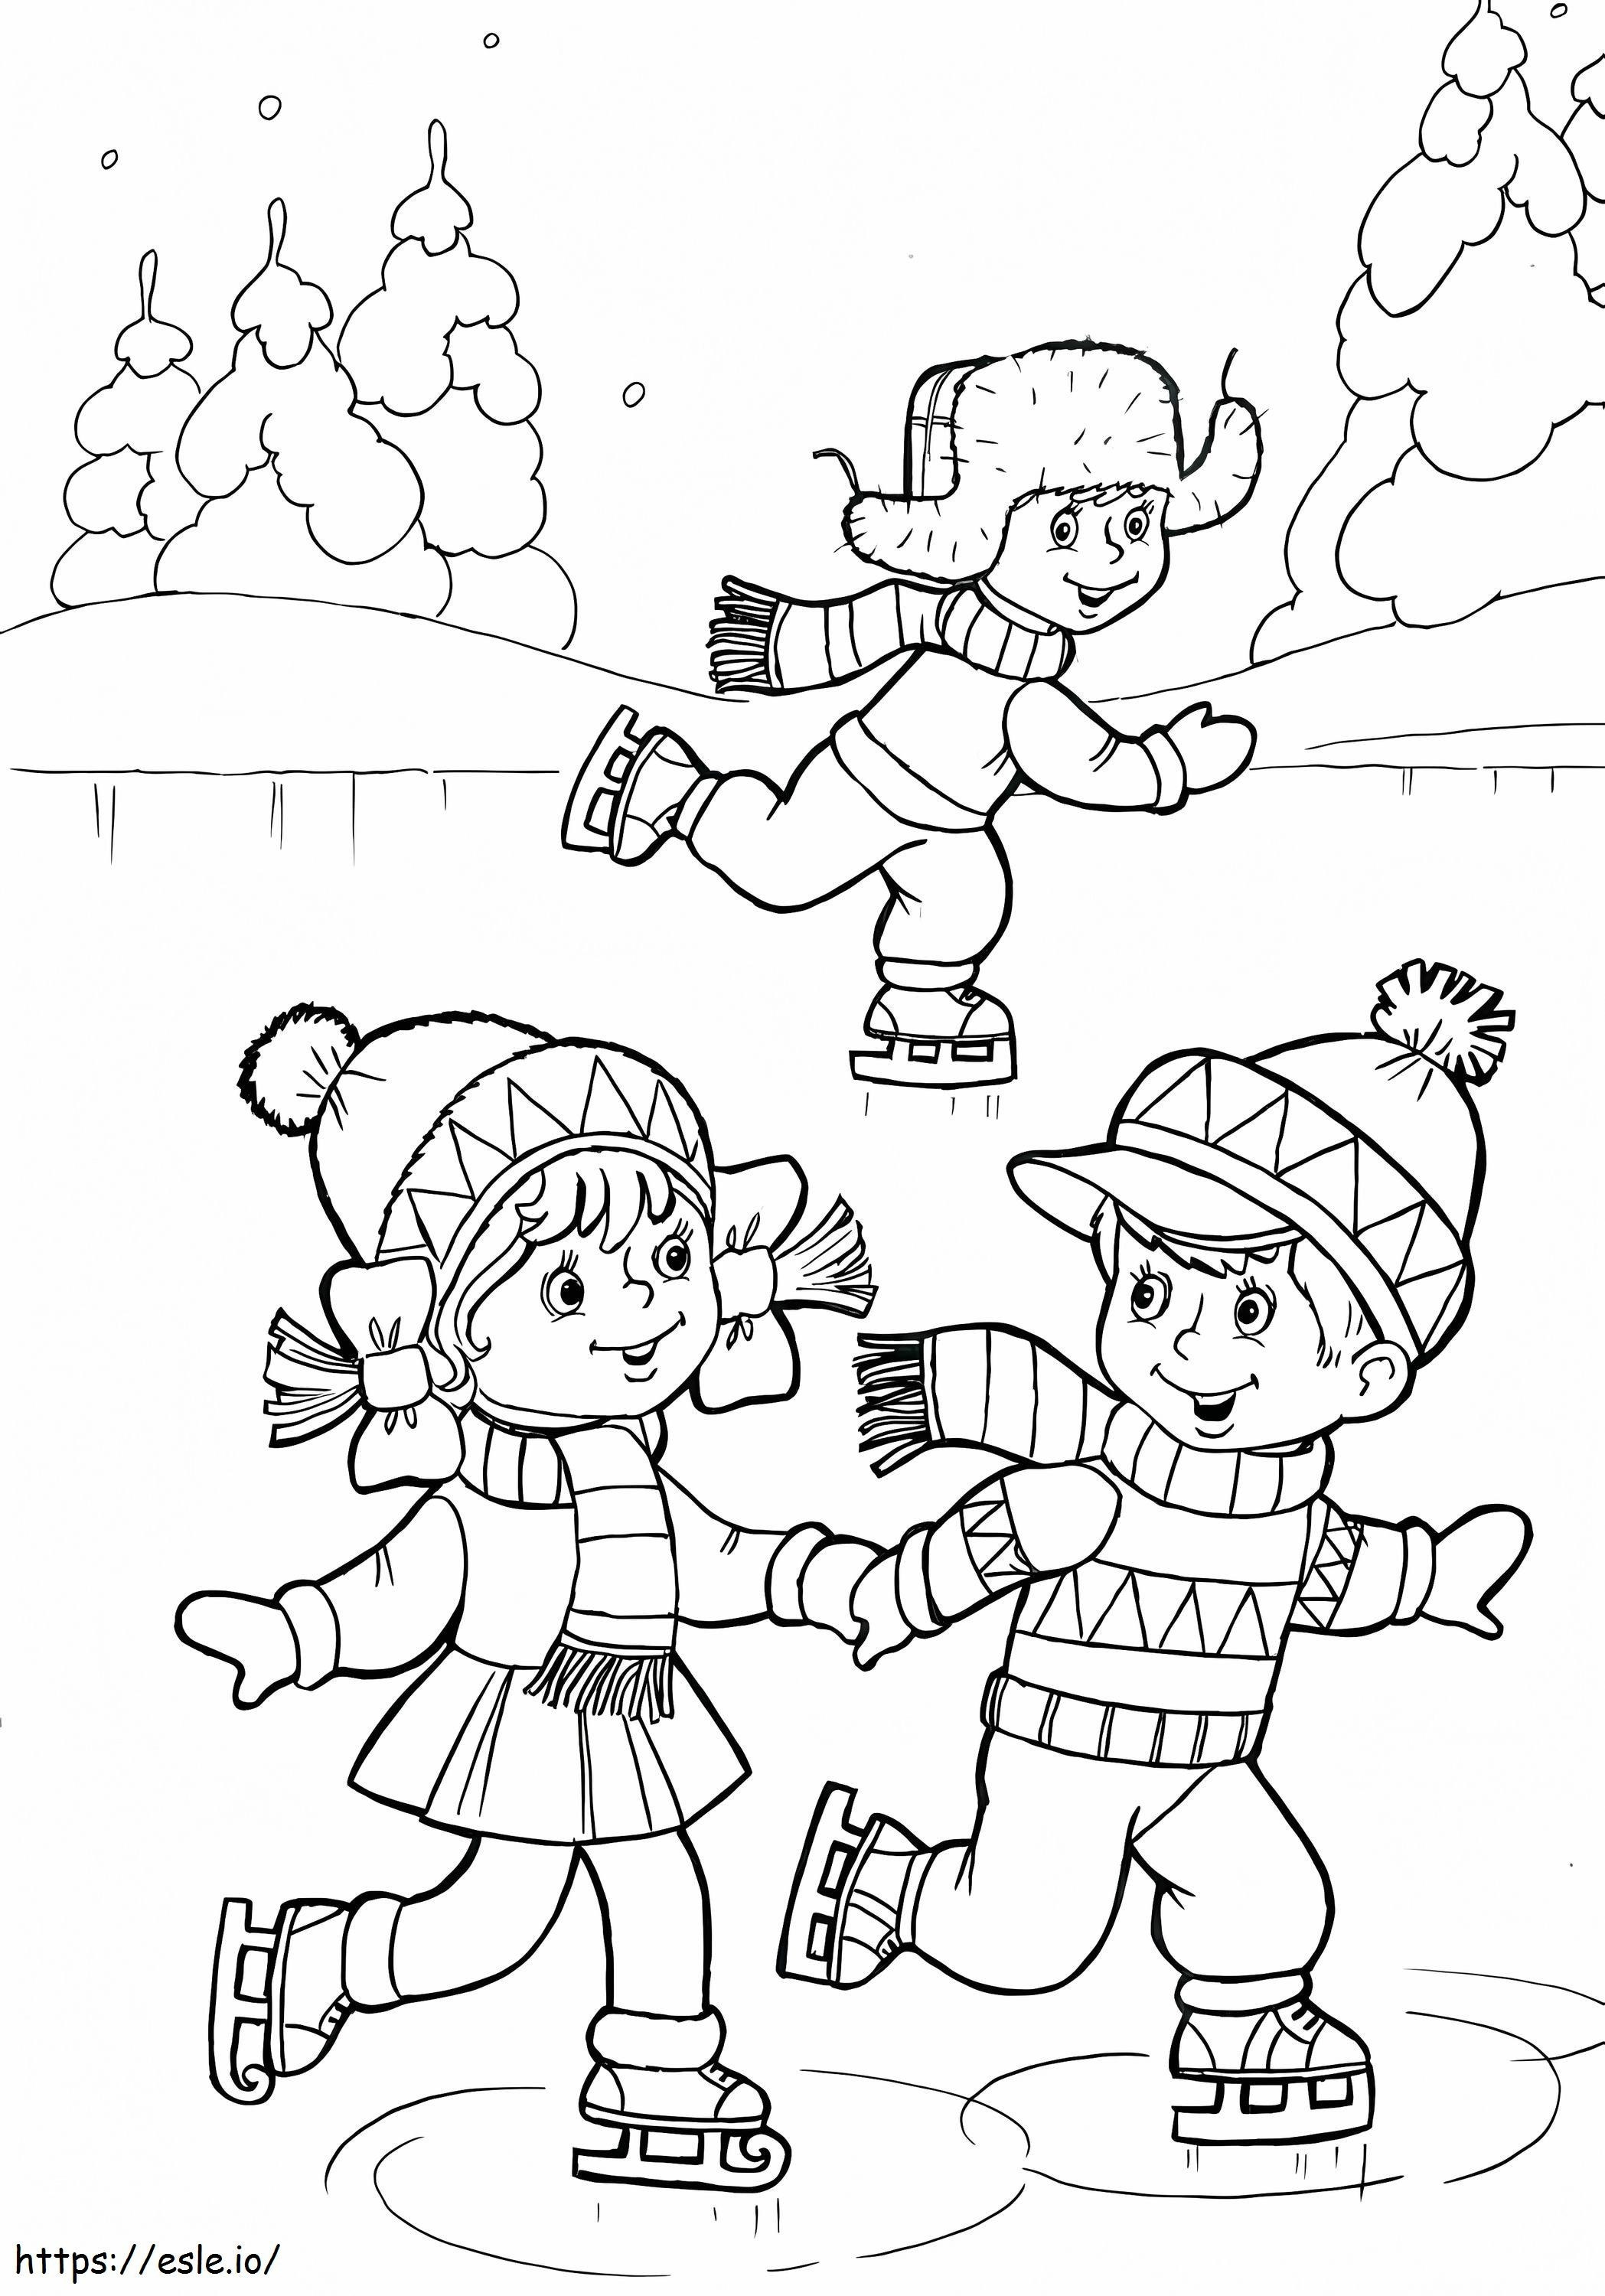 Três crianças brincando de patinação no gelo para colorir